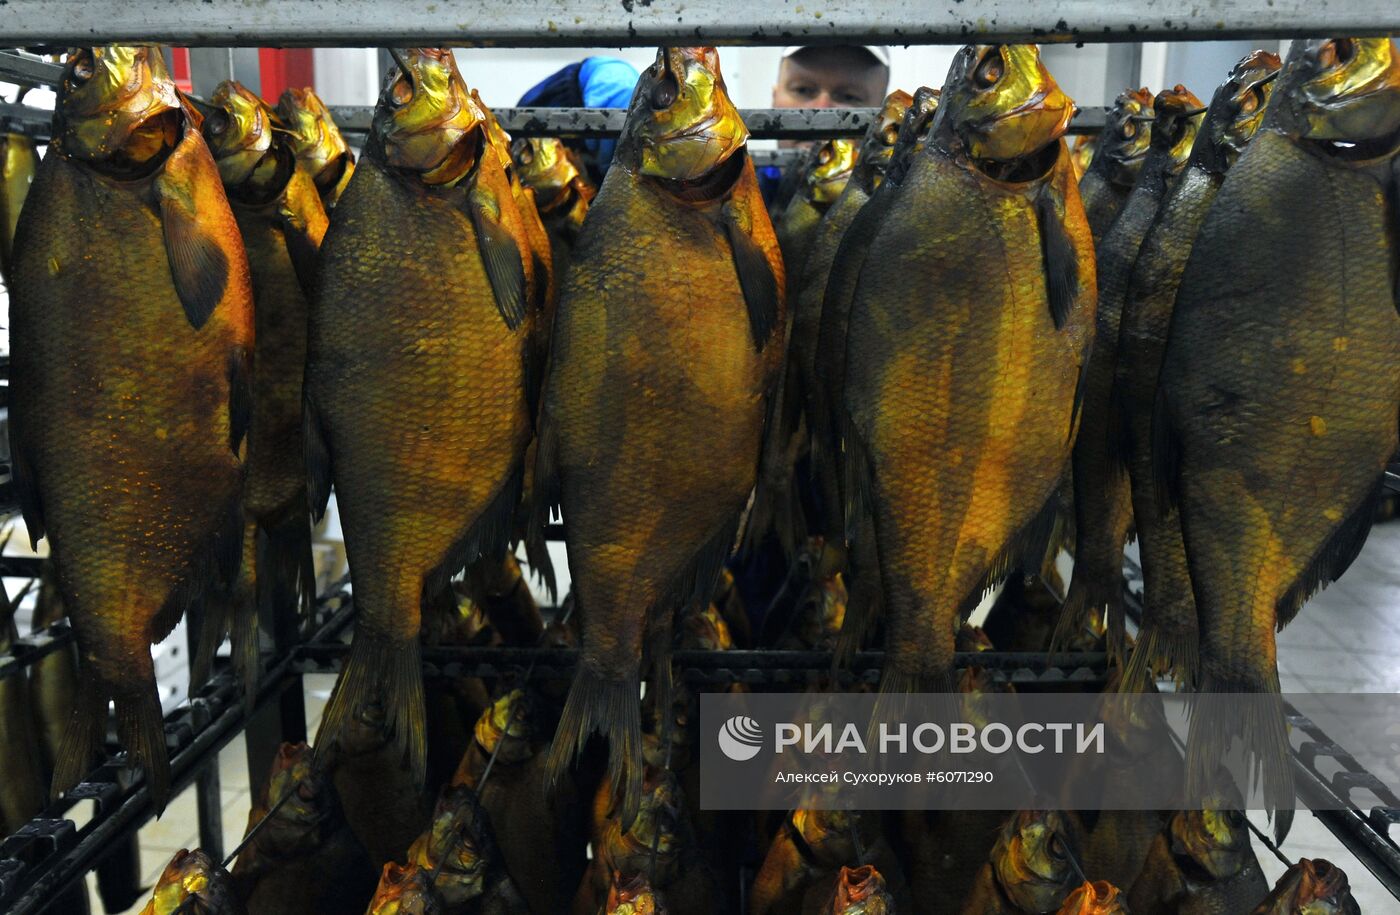 Производство рыбной продукции в Тамбовской области